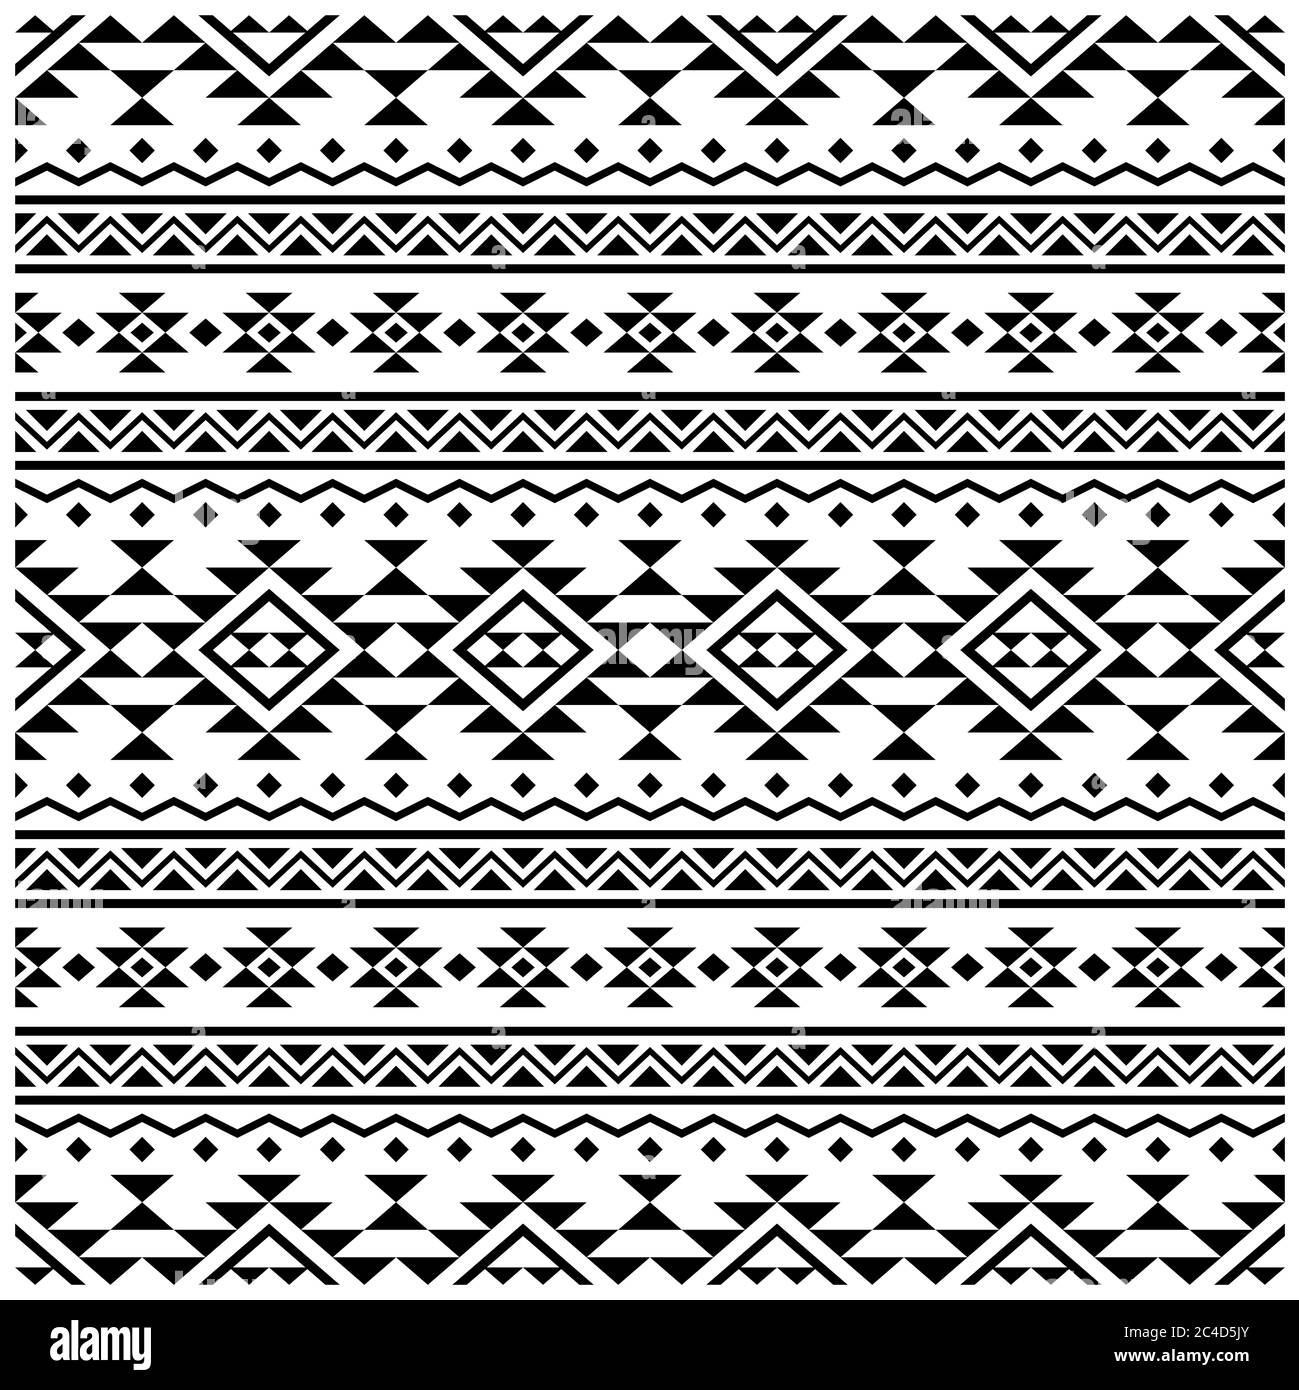 Mẫu truyền thống dân tộc đối xứng ở vùng Aztec là một sự pha trộn giữa văn hóa và nghệ thuật. Hoa văn đối xứng và hình ảnh đa dạng kết hợp tạo ra một mẫu vải độc đáo. Xem hình ảnh để nhận thấy sự hấp dẫn và sáng tạo của mẫu truyền thống dân tộc đối xứng ở vùng Aztec.